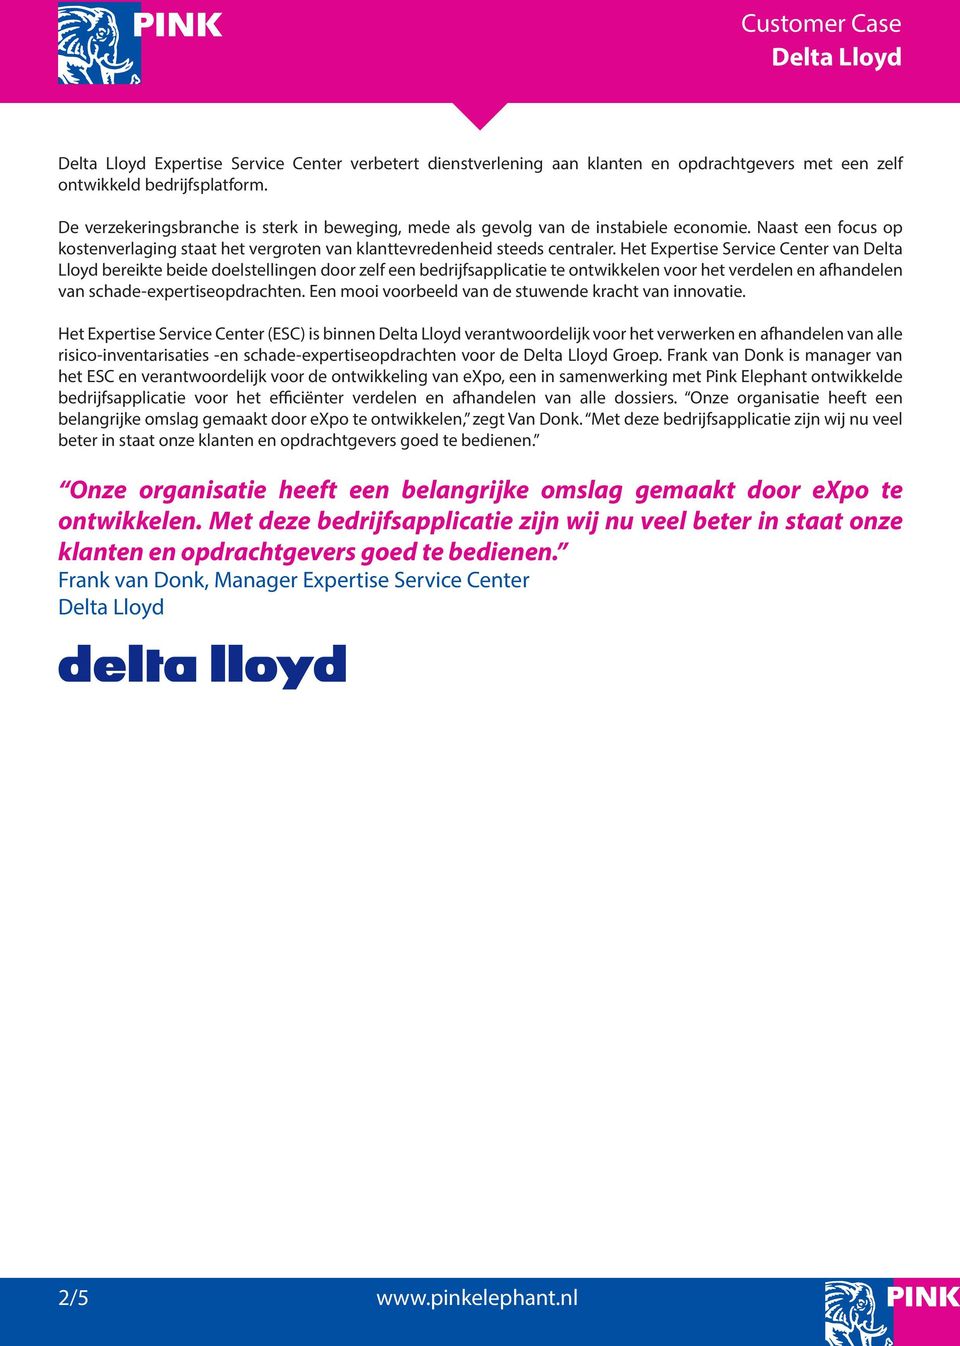 Het Expertise Service Center van Delta Lloyd bereikte beide doelstellingen door zelf een bedrijfsapplicatie te ontwikkelen voor het verdelen en afhandelen van schade-expertiseopdrachten.